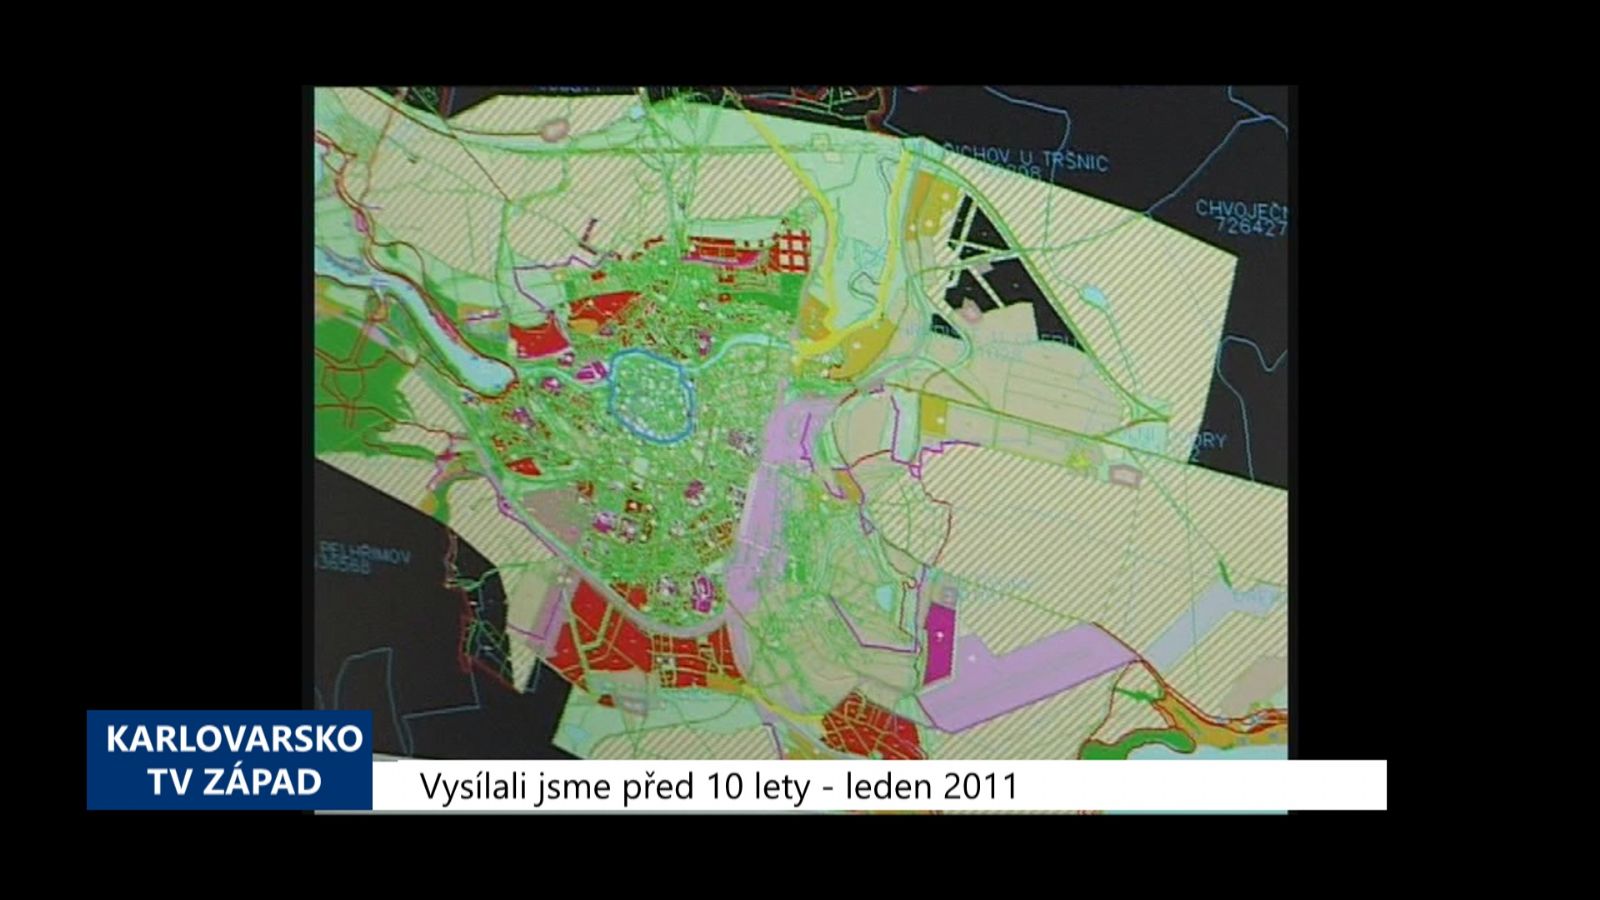 2011 – Cheb: Územní plán jde do posouzení orgánů města (4269) (TV Západ)